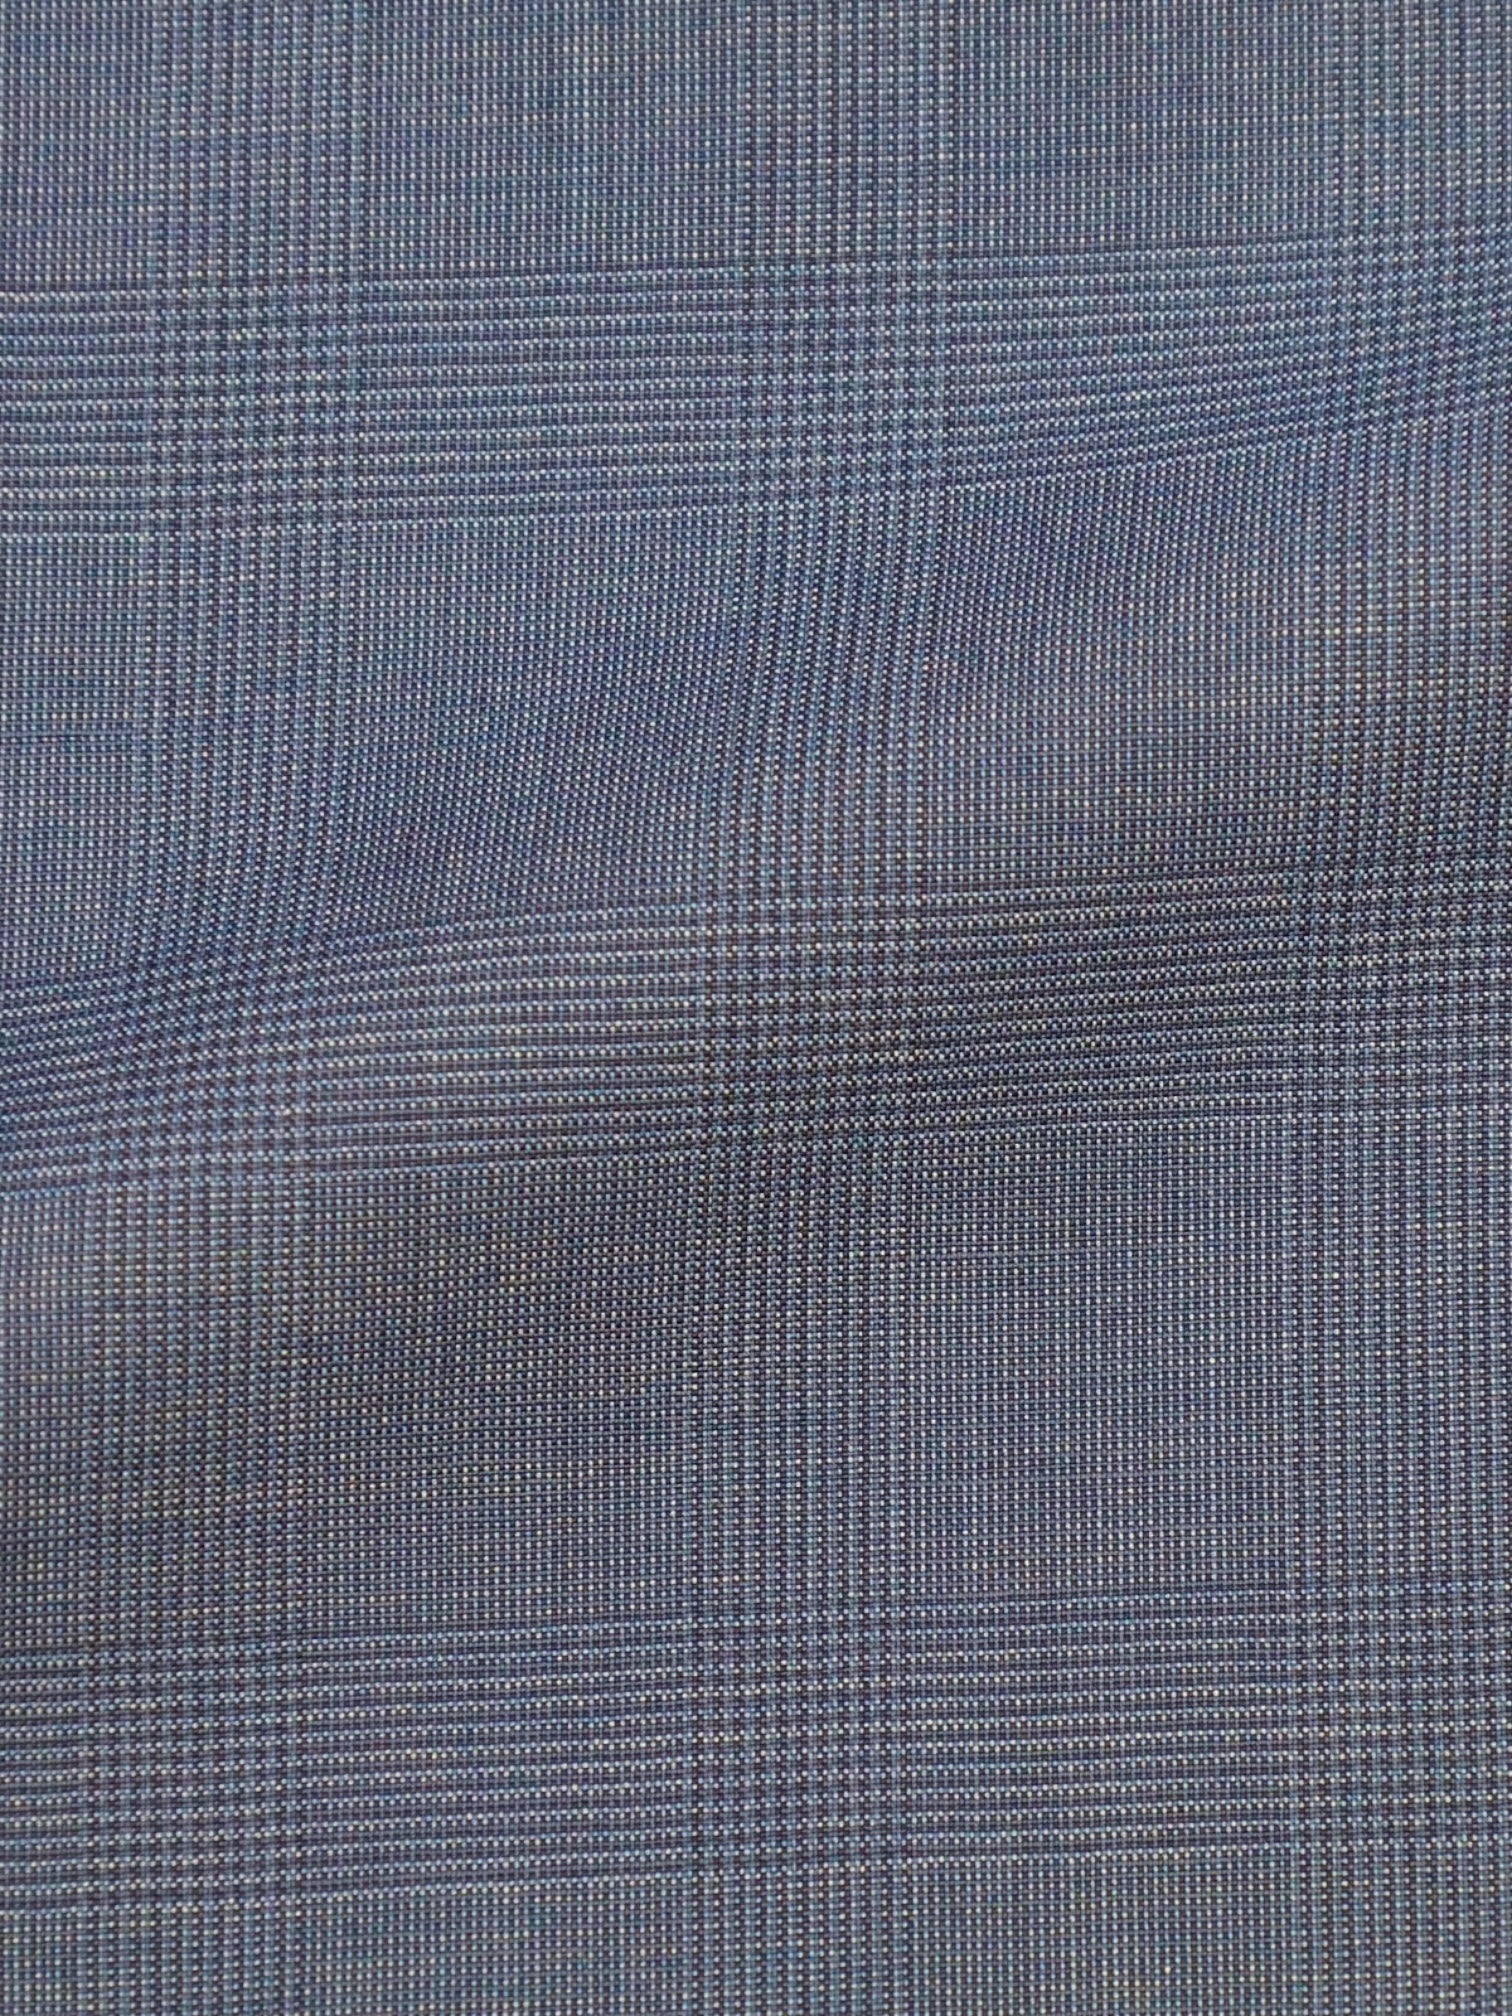 Cesare Attolini Slate Blue Wool & Silk Glenplaid Suit